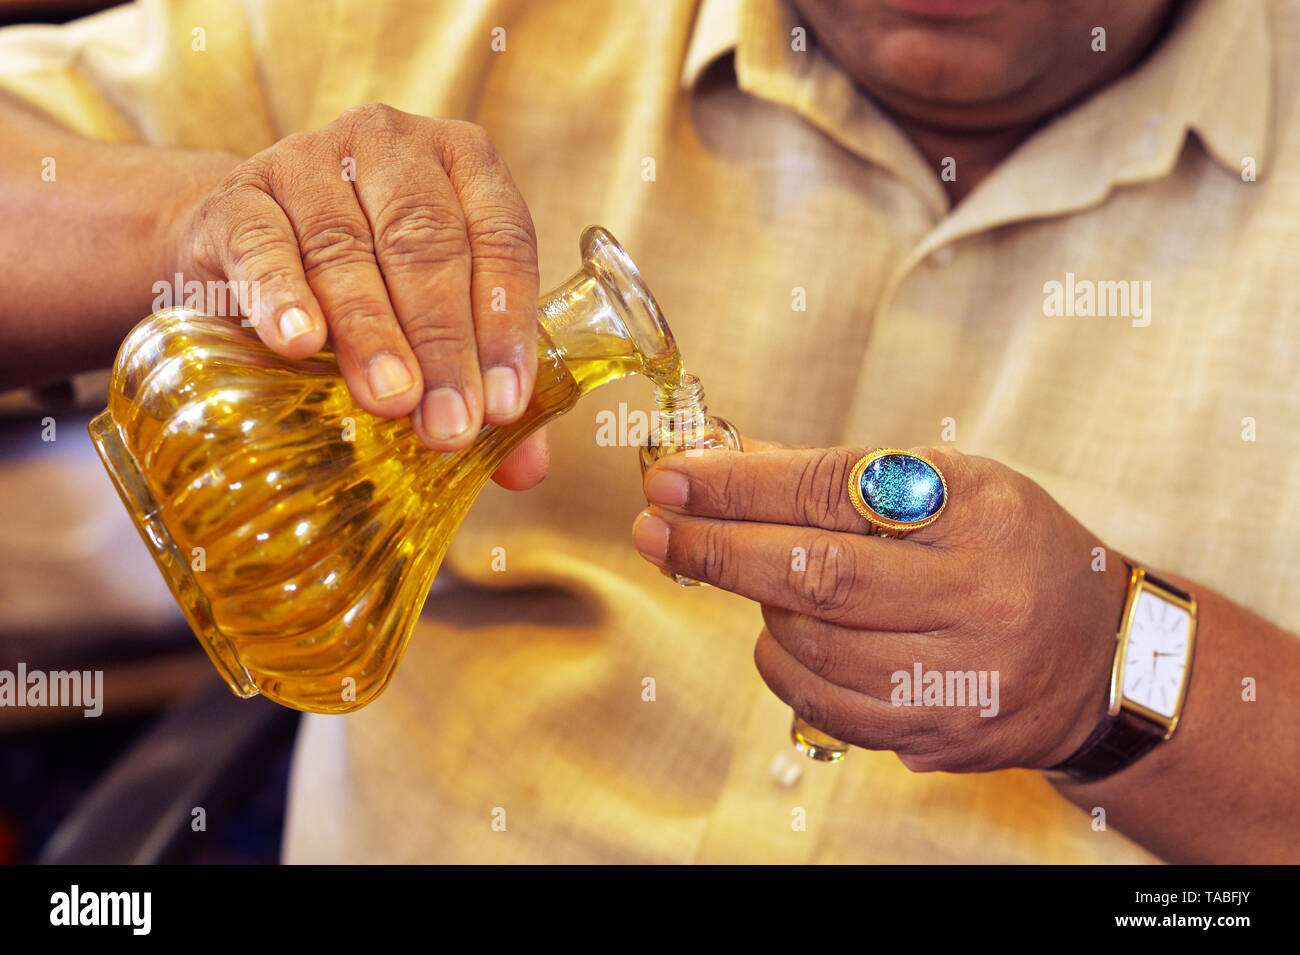 Man pouring huile essentielle de la bouteille en verre close up Banque D'Images